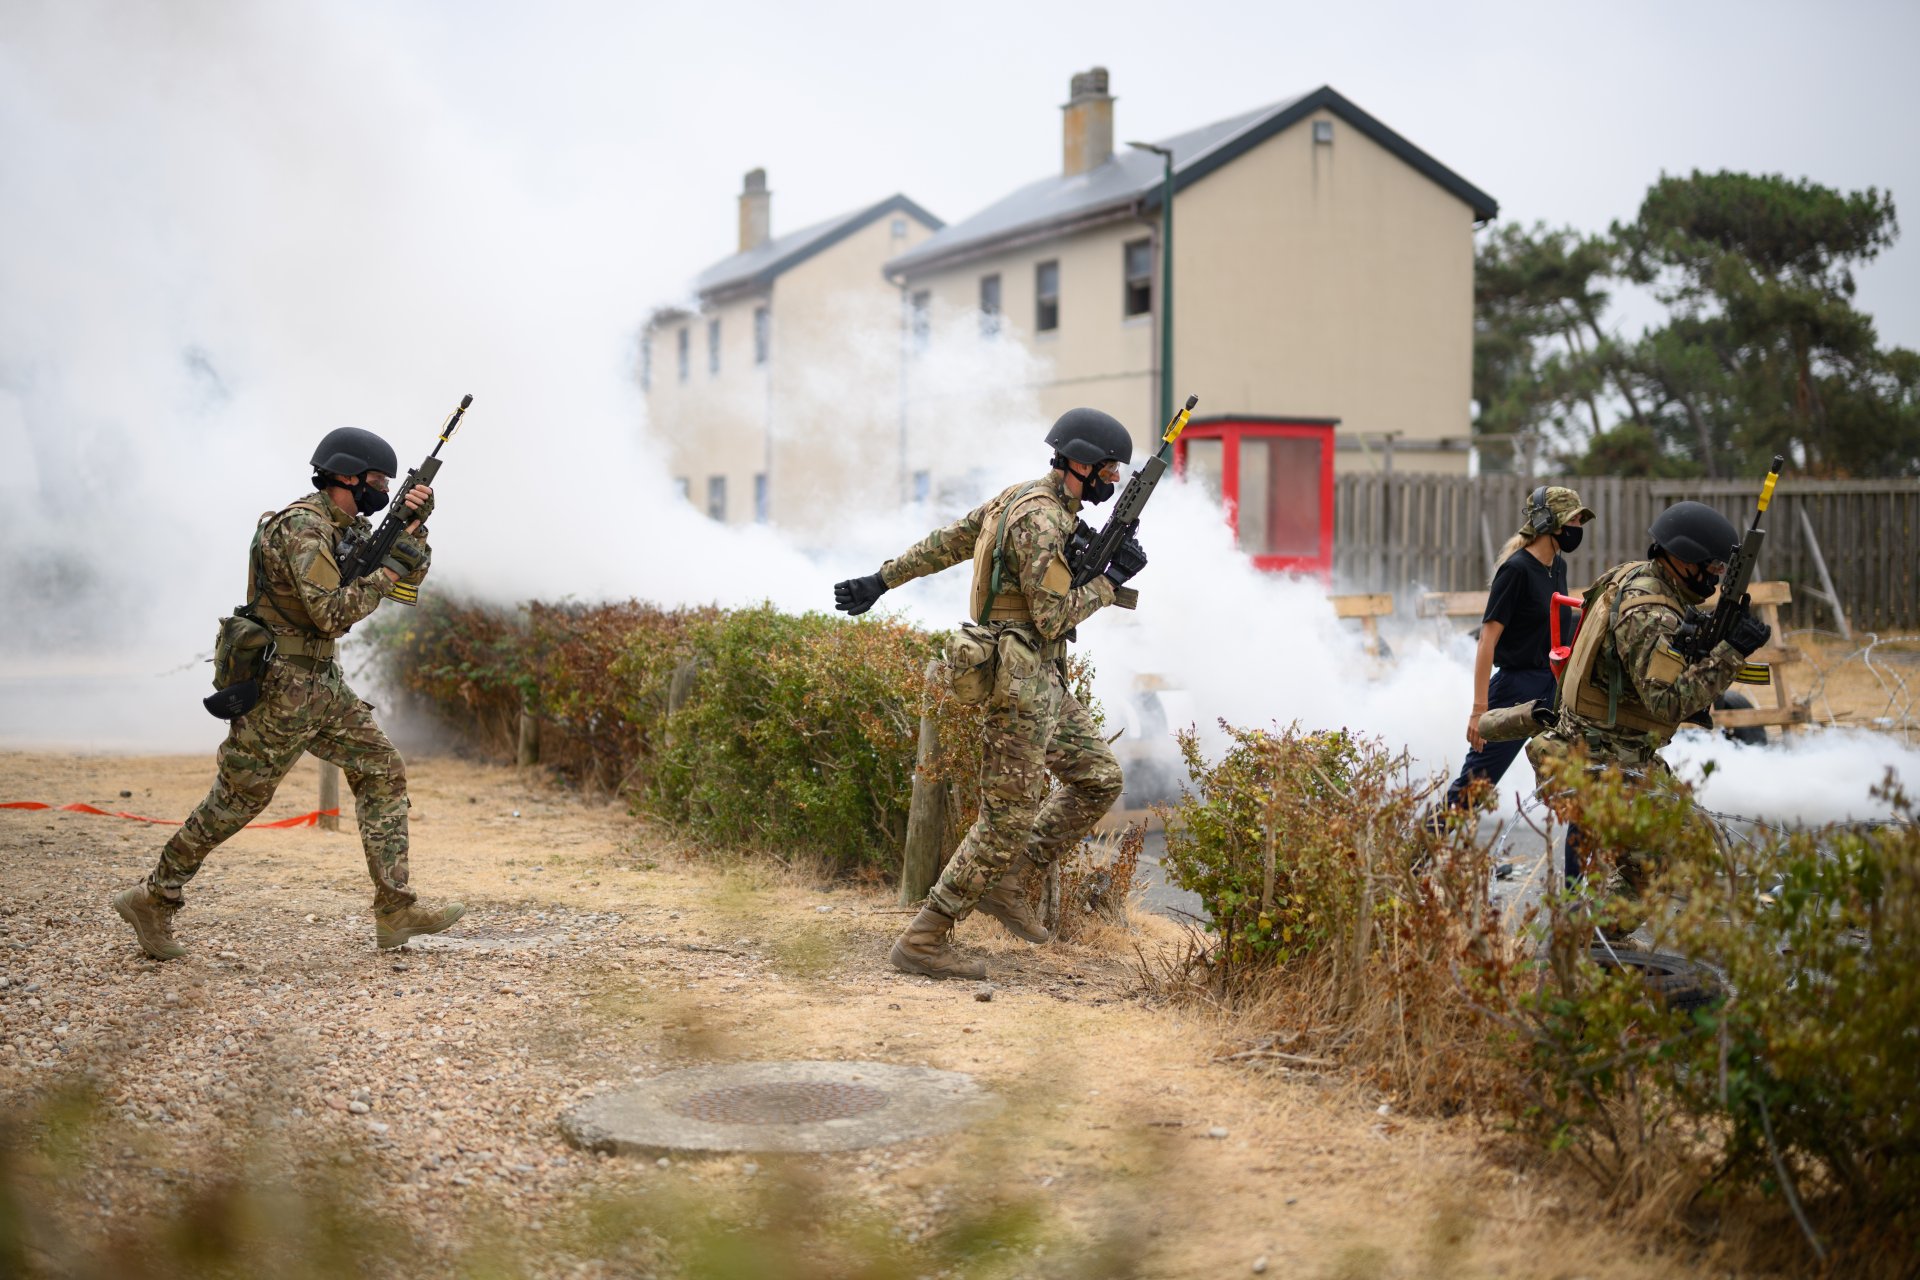 Украински военни доброволци участват в градско бойно учение. Те са на съвместно обучение с членове на британските въоръжени сили в Югоизточна Англия. 